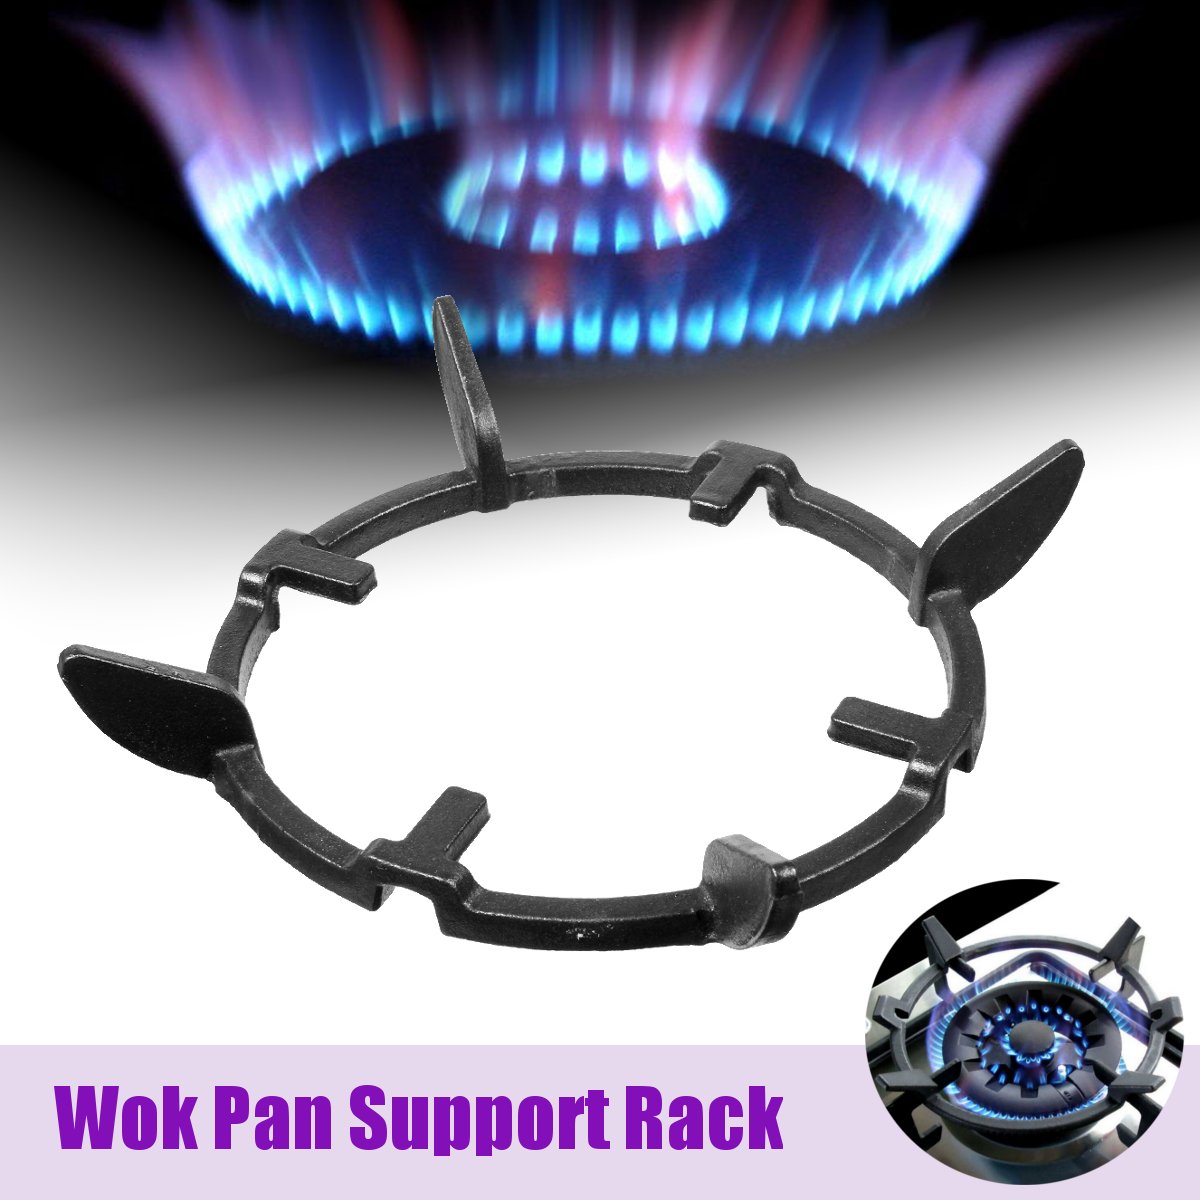 1pc wok stativer støbejern wok pan stativ support rack til brændere gaskogeplader komfurer komfurer køkkenudstyr leverer værktøj tilbehør